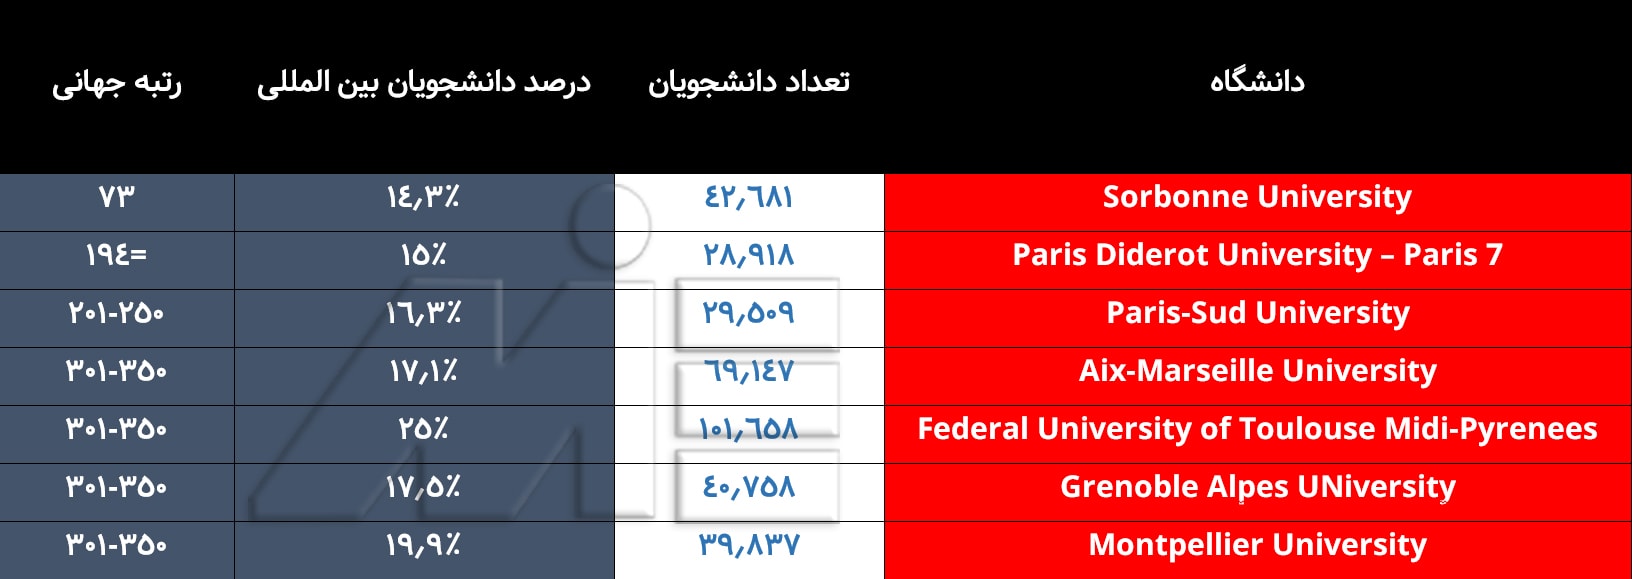 لیست برترین دانشگاههای کشور فرانسه با رنکینگ بین المللی آنها